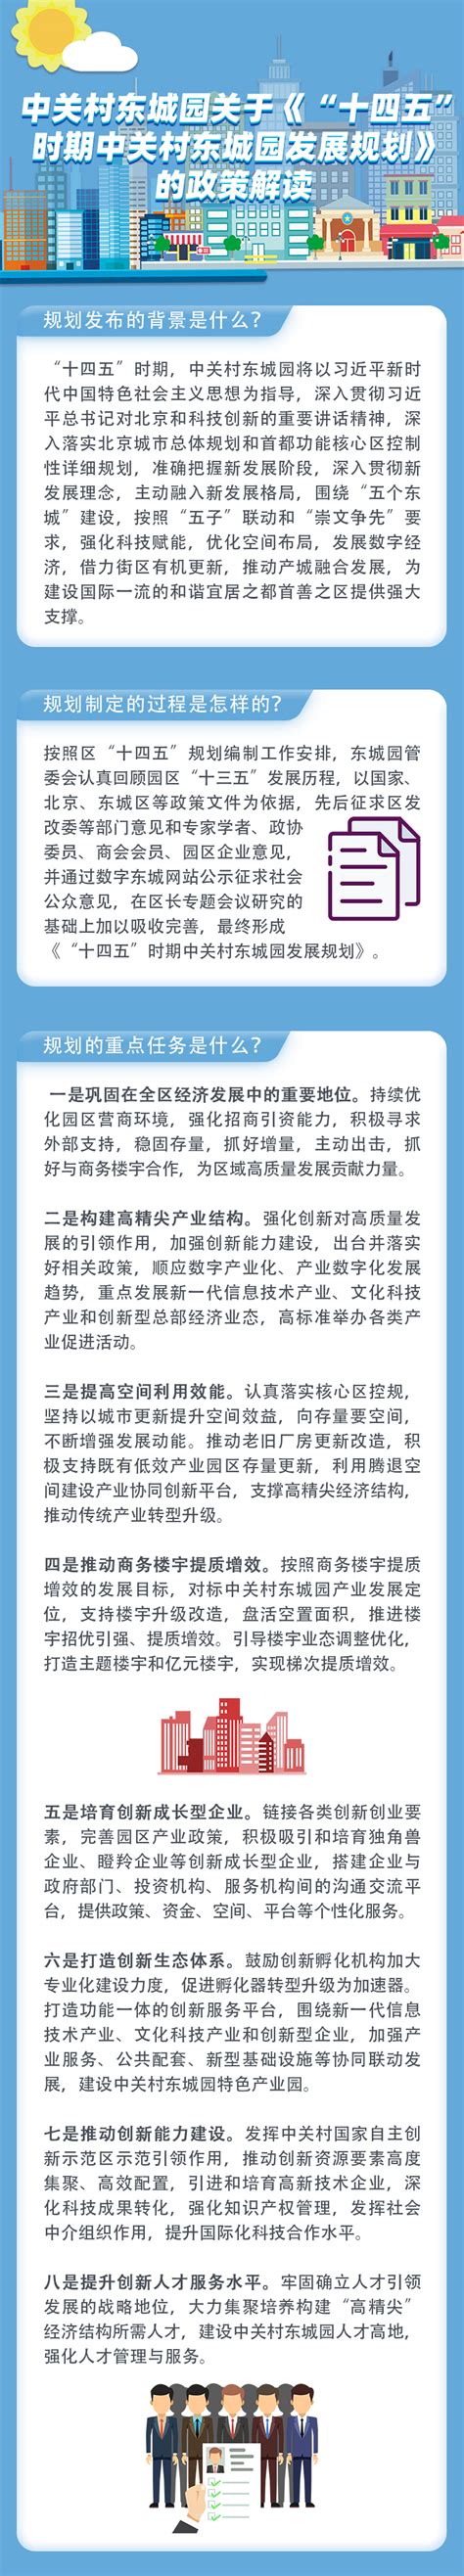 北京市东城区你点我检平台抽检统计表--2021年6月公示-中国质量新闻网